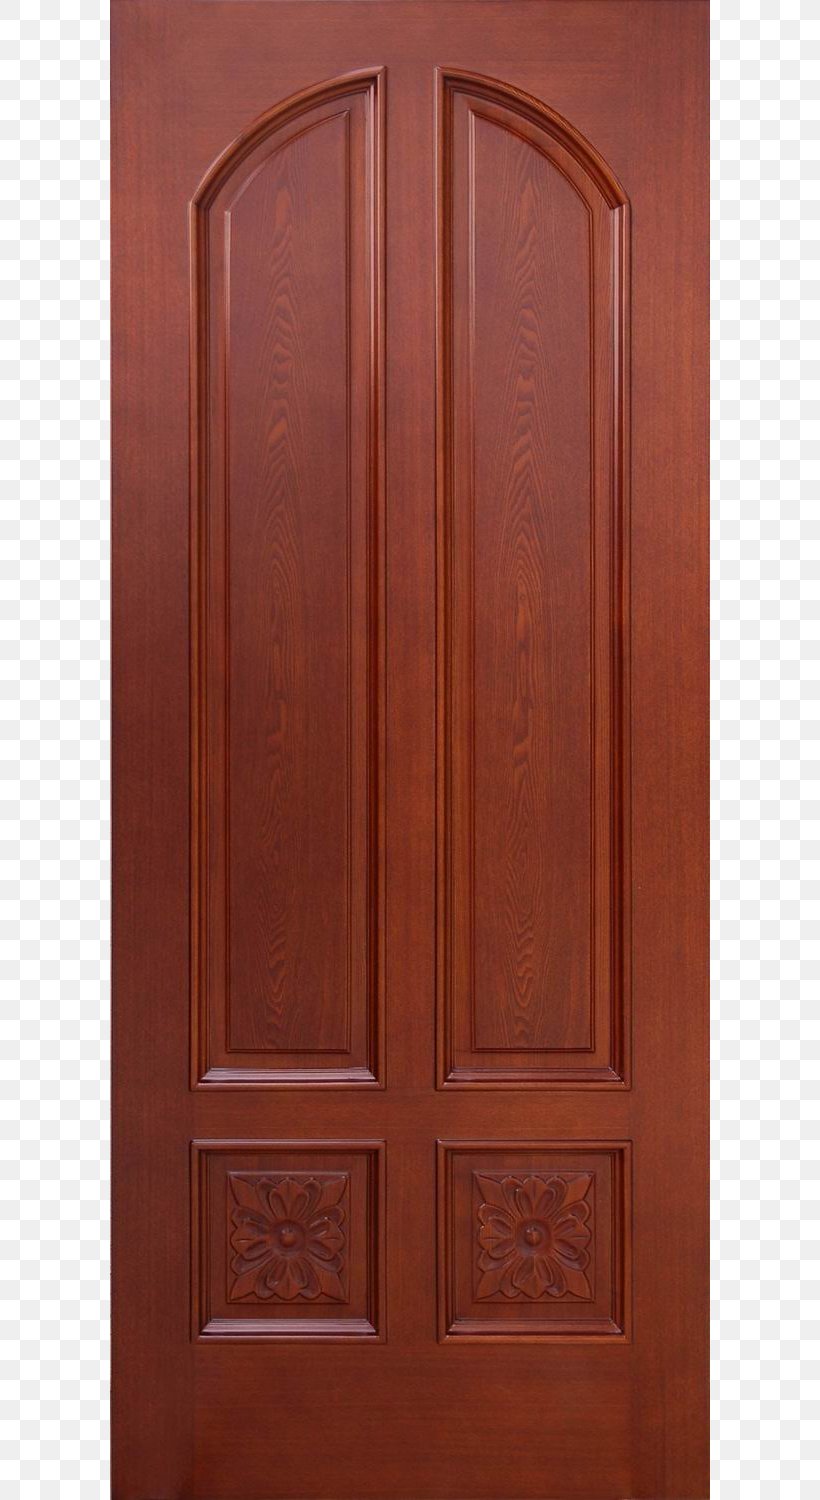 Hardwood Door Brown Wood Stain, PNG, 600x1500px, Wood, Door, Hardwood, Wood Stain Download Free